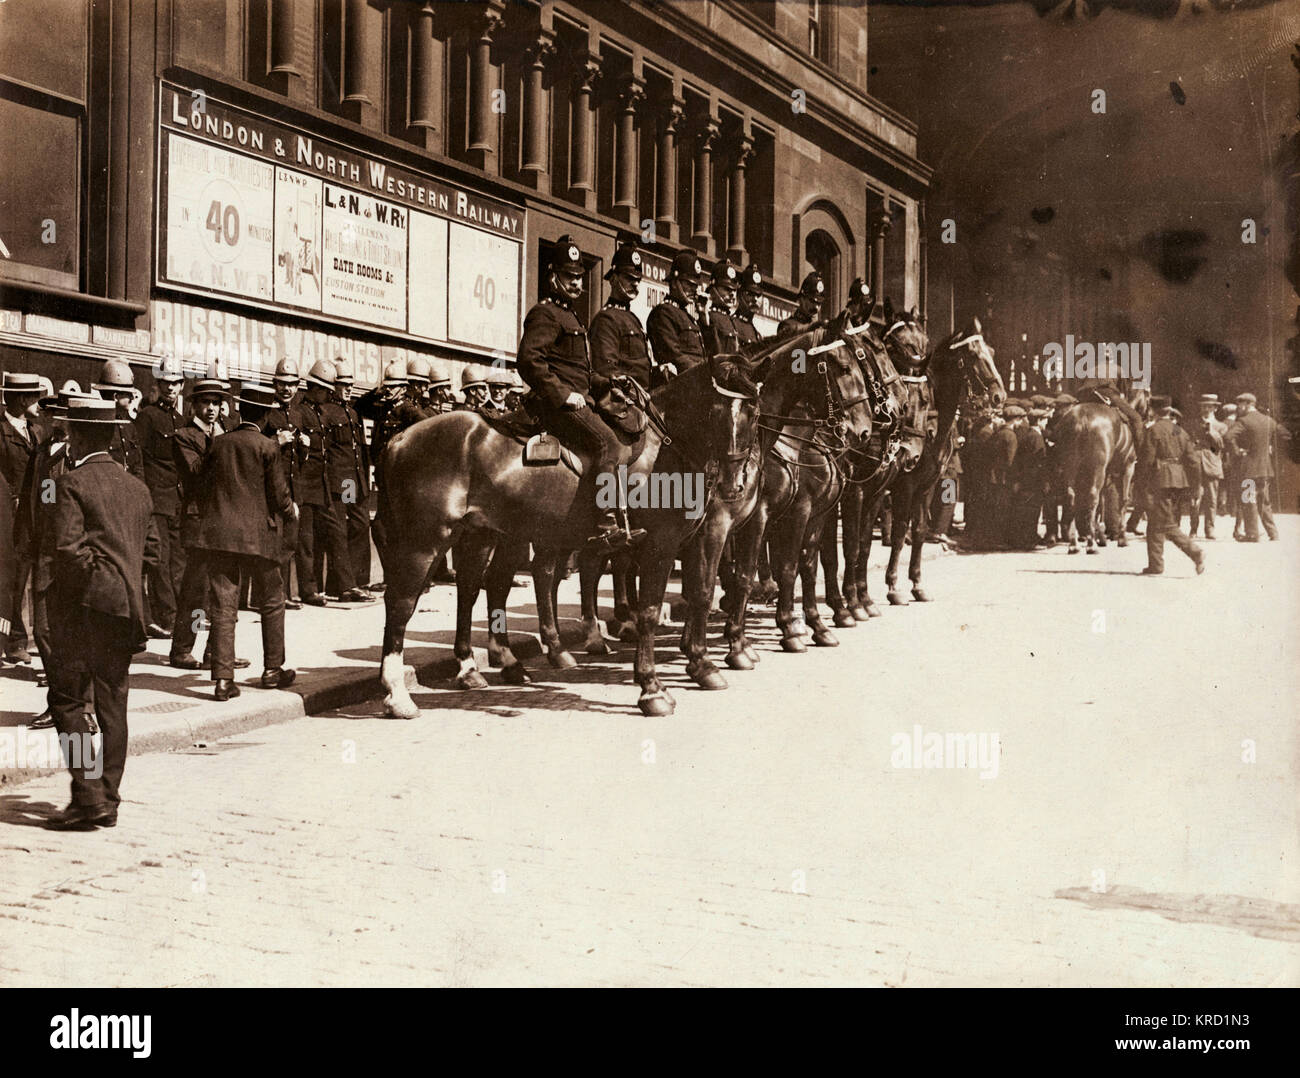 Polizisten zu Pferde bewachen Liverpool Station während der allgemeinen Transport Streik von 1911. Der Streik begann mit zwei der Seeleute Gewerkschaften, die aus einer Reihe von Beschwerden, übergreifen und sich auf andere Arbeitnehmer, durch die Mitte Juni nationale. Von August Eisenbahner waren die Teilnahme an, und eine Masse Demonstration in Liverpool am 13. August, friedlich Anfang, sondern das Ende im Kampf gegen die als Folge der Gewalt der Polizei. Die Stadt kam zum Stillstand am 15. August. Jedoch waren die Verhandlungen begonnen und die Eisenbahner kehrte am 21. August zu arbeiten. Datum: Summe Stockfoto